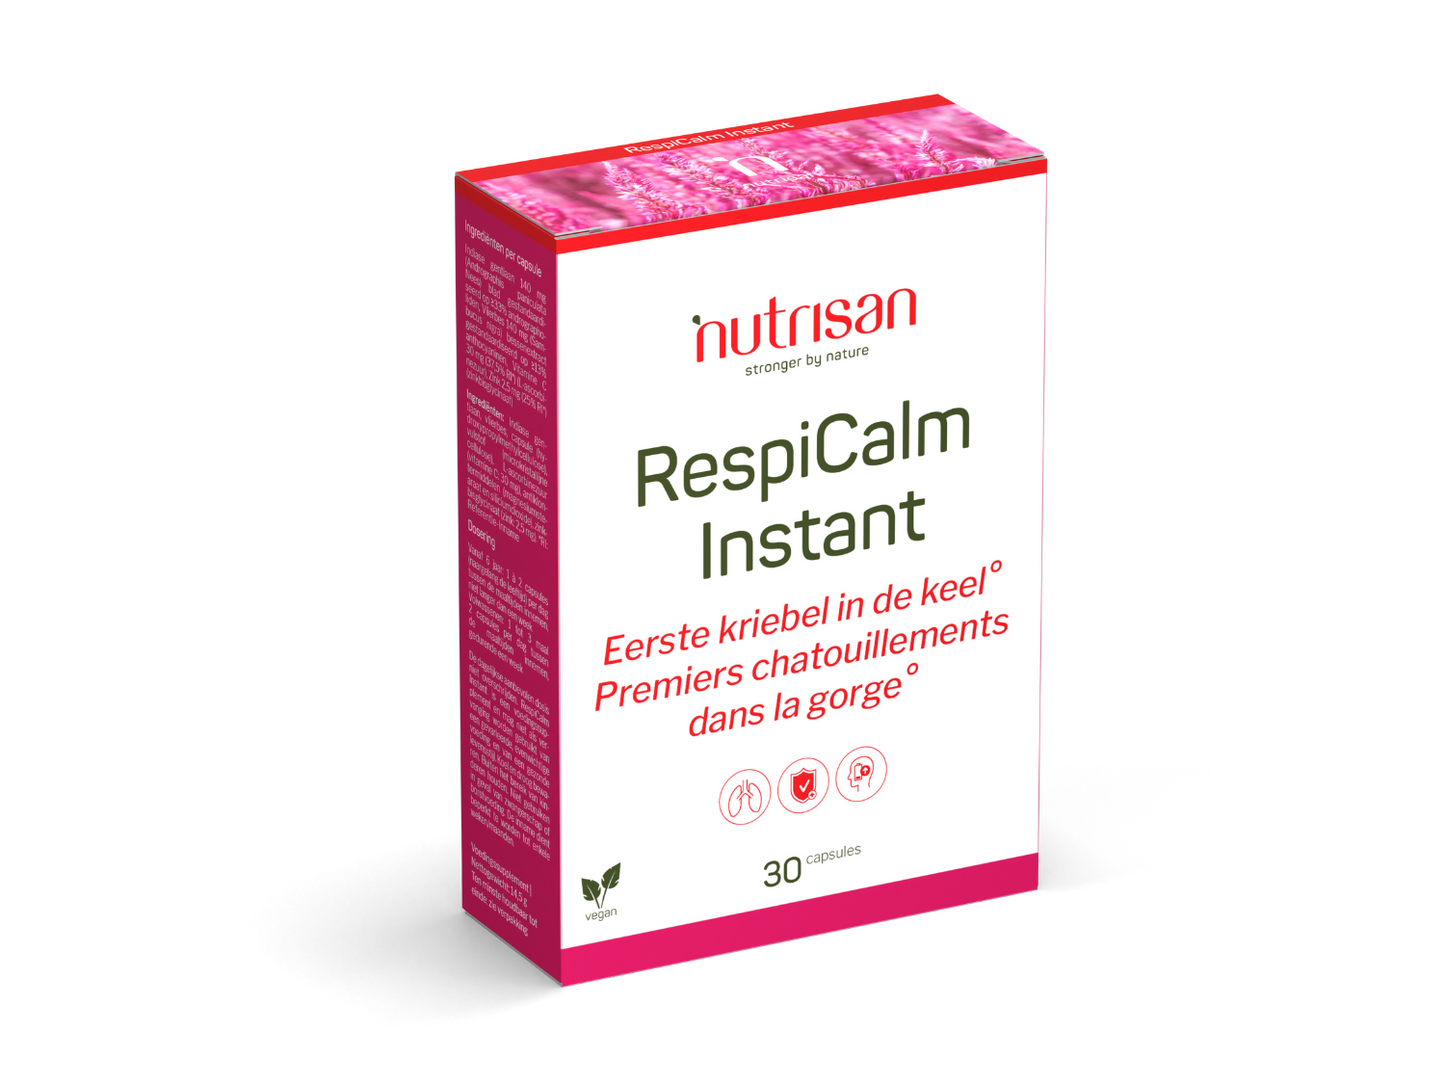 Nutrisan RespiCalm Instant - 30 cupsules - Supplement voor kriebel in keel